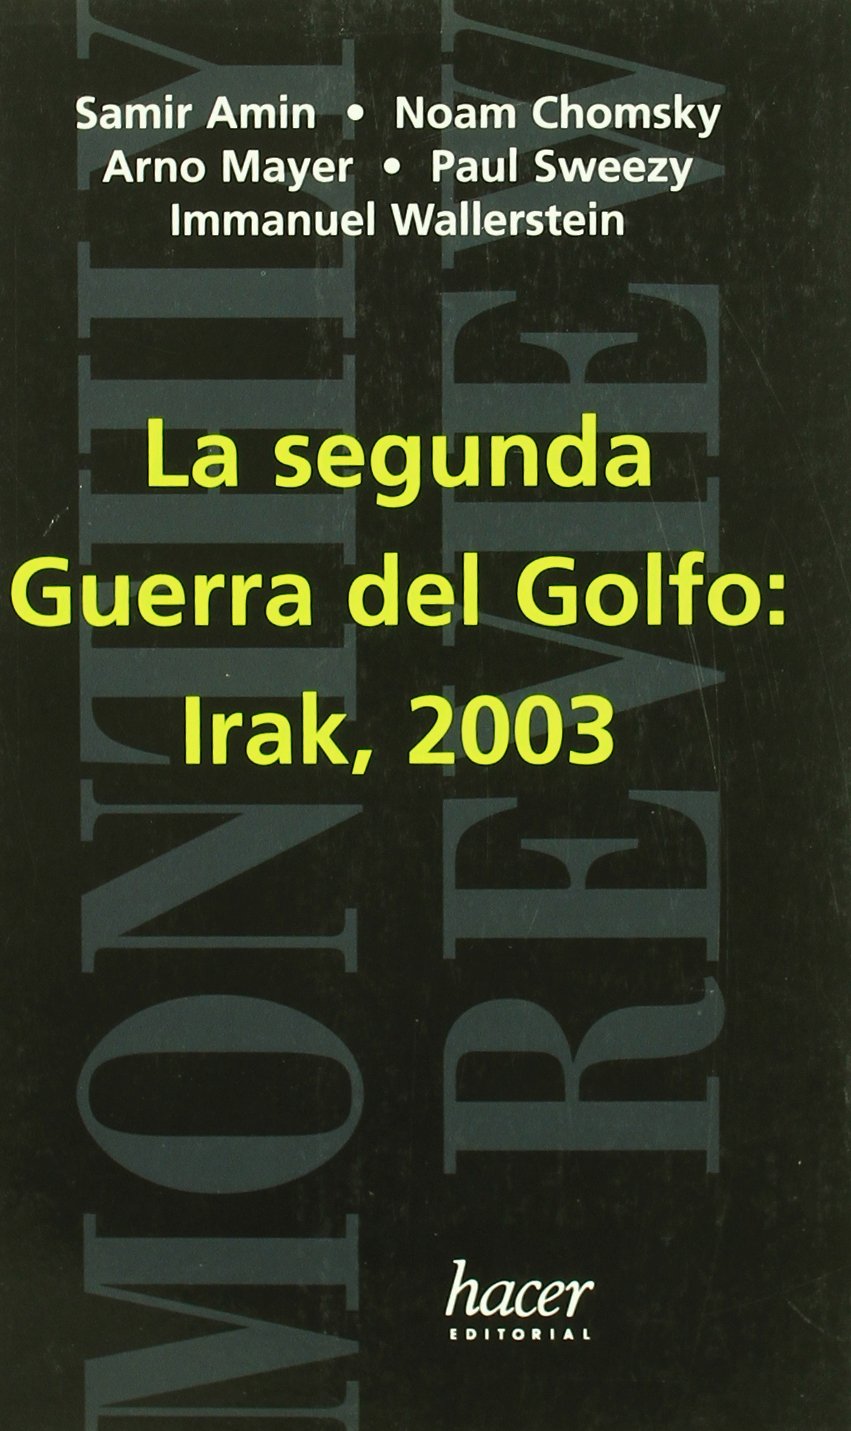 La segunda guerra del Golfo : Irak 2003